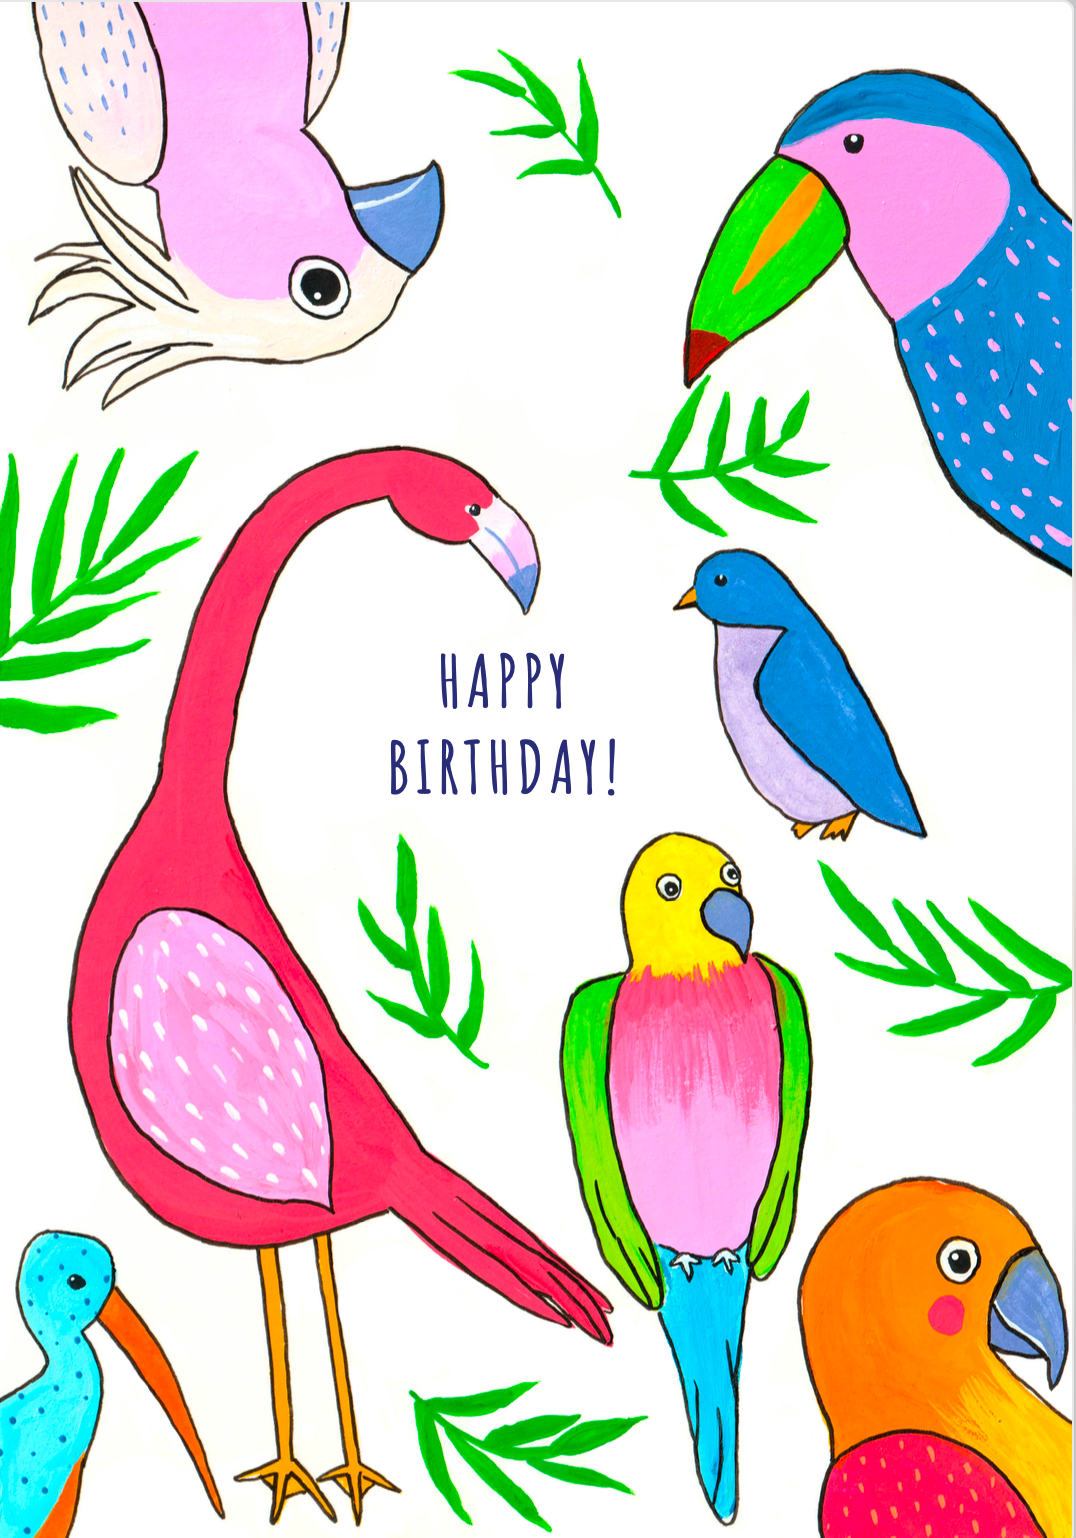 Carte happy birthday avec dessins d'oiseaux  colorés, perroquets multicolores